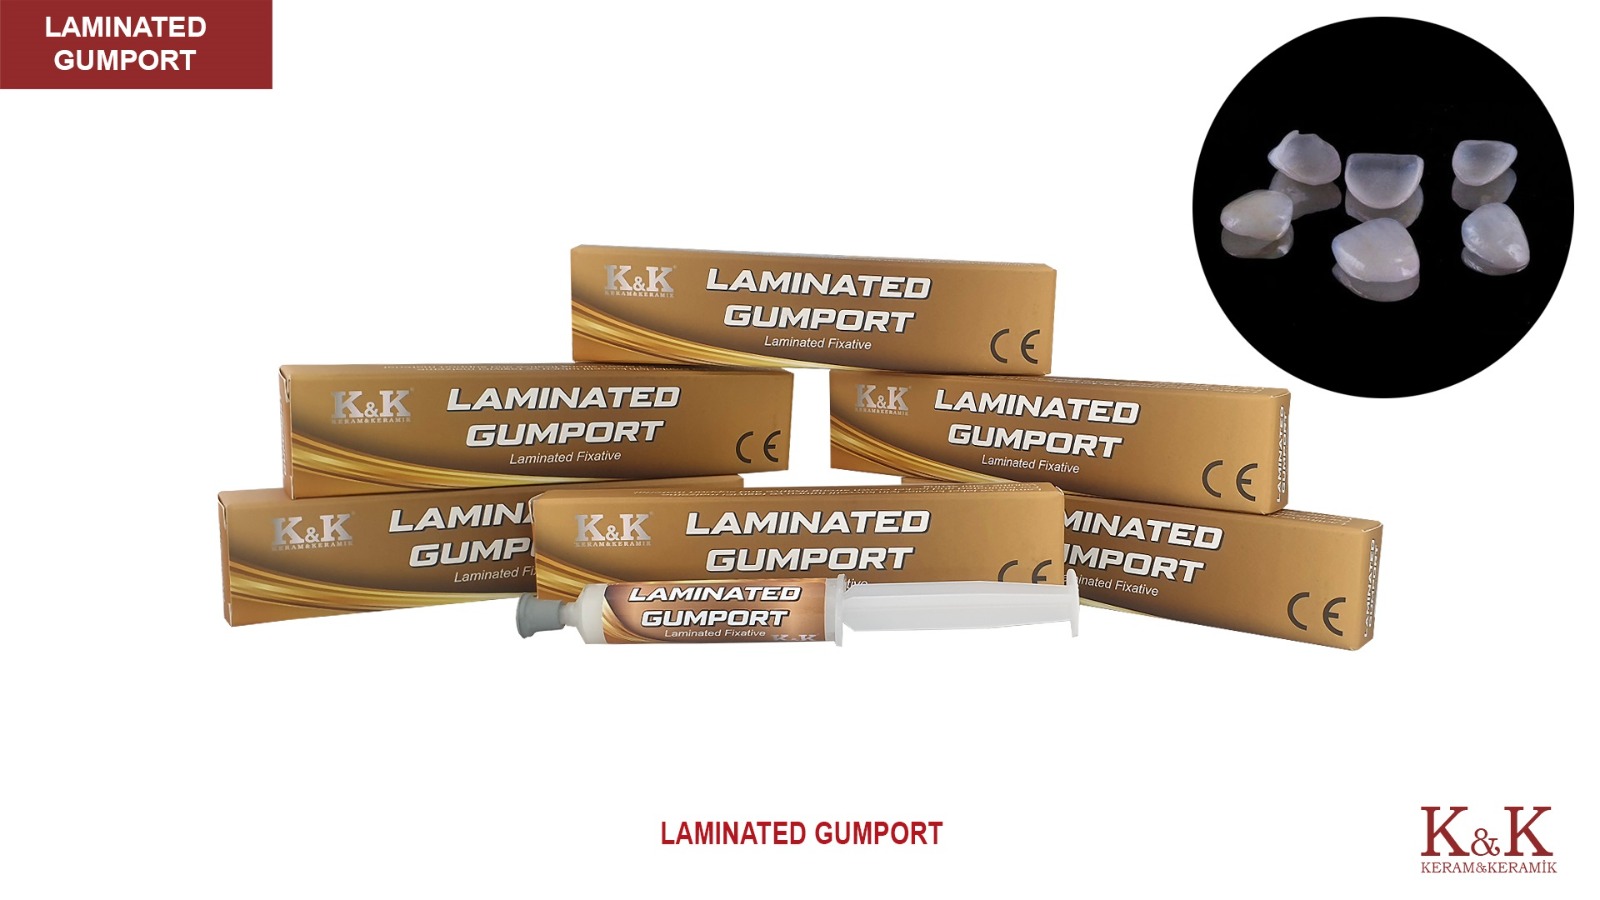 Laminated Gumport